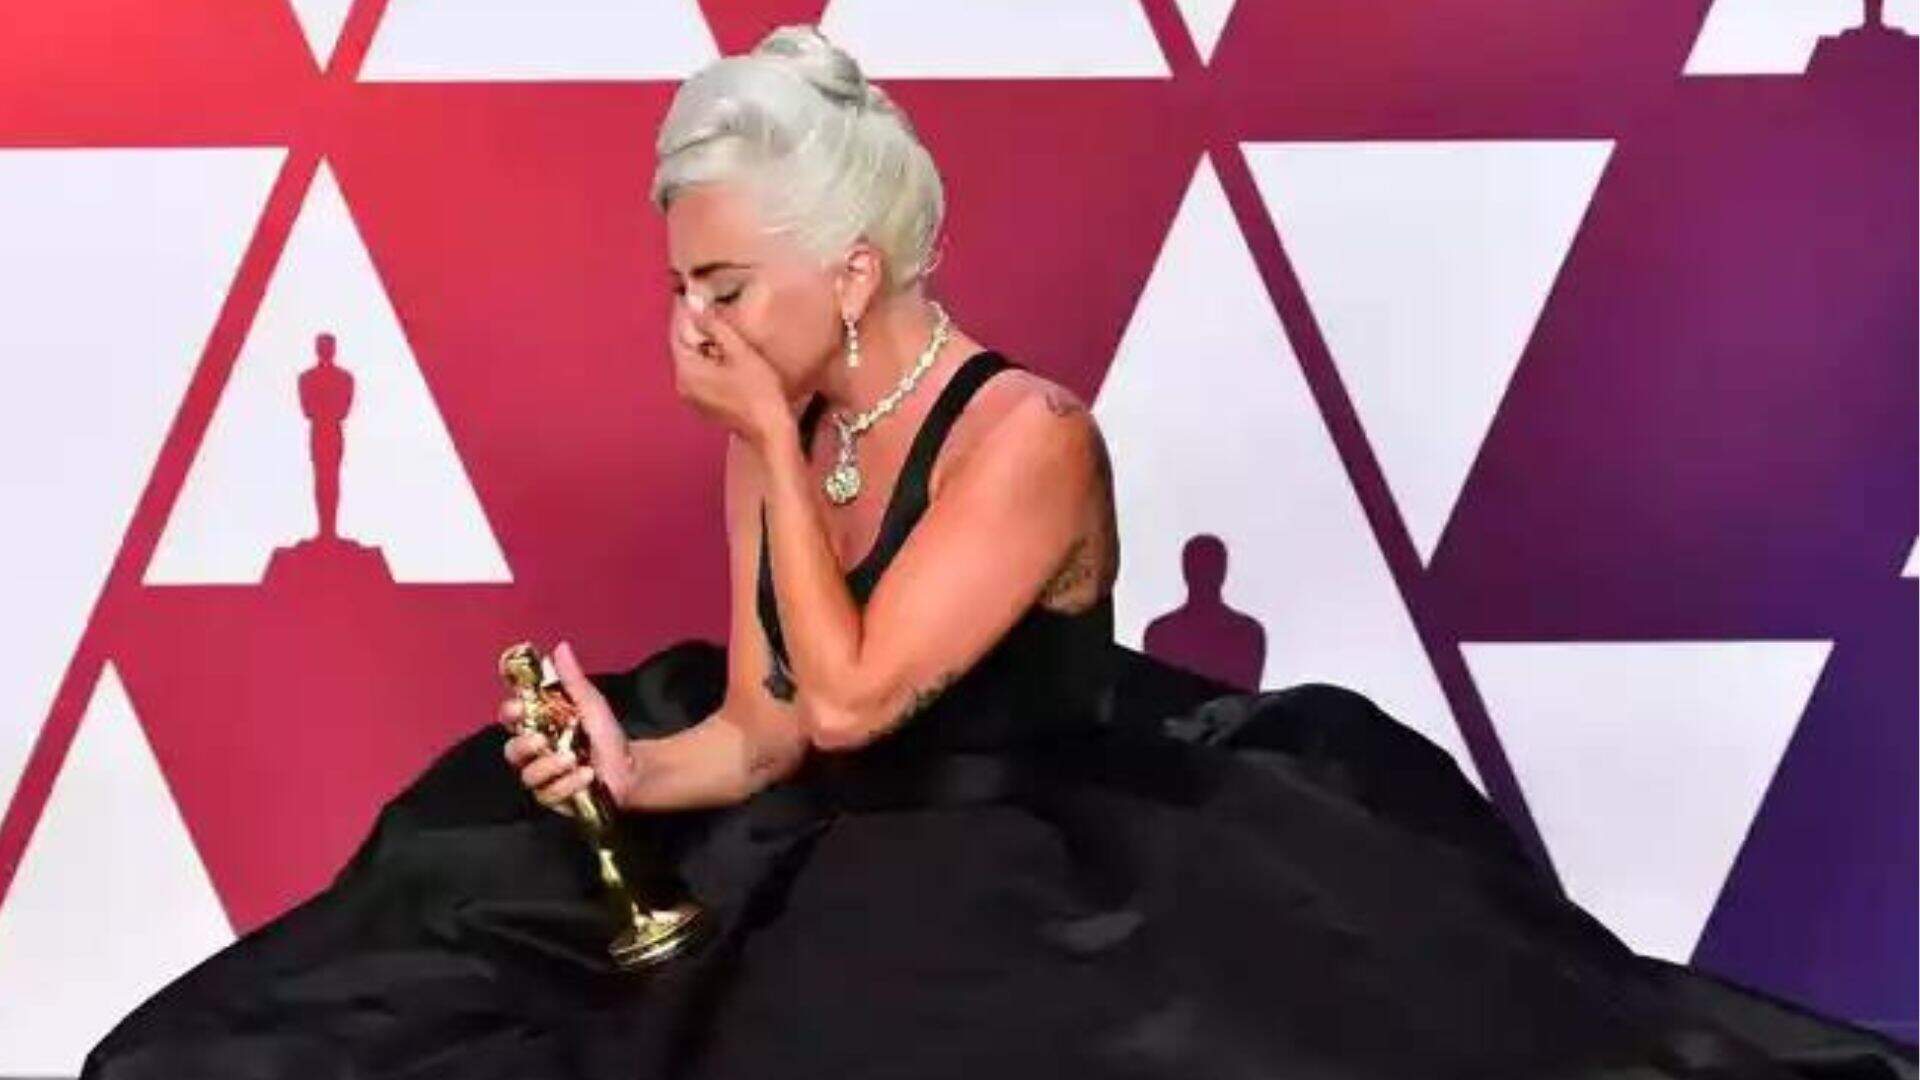 Lady Gaga quebra tradição no Oscar 2023 após ser indicada em categoria musical da cerimônia - Metropolitana FM